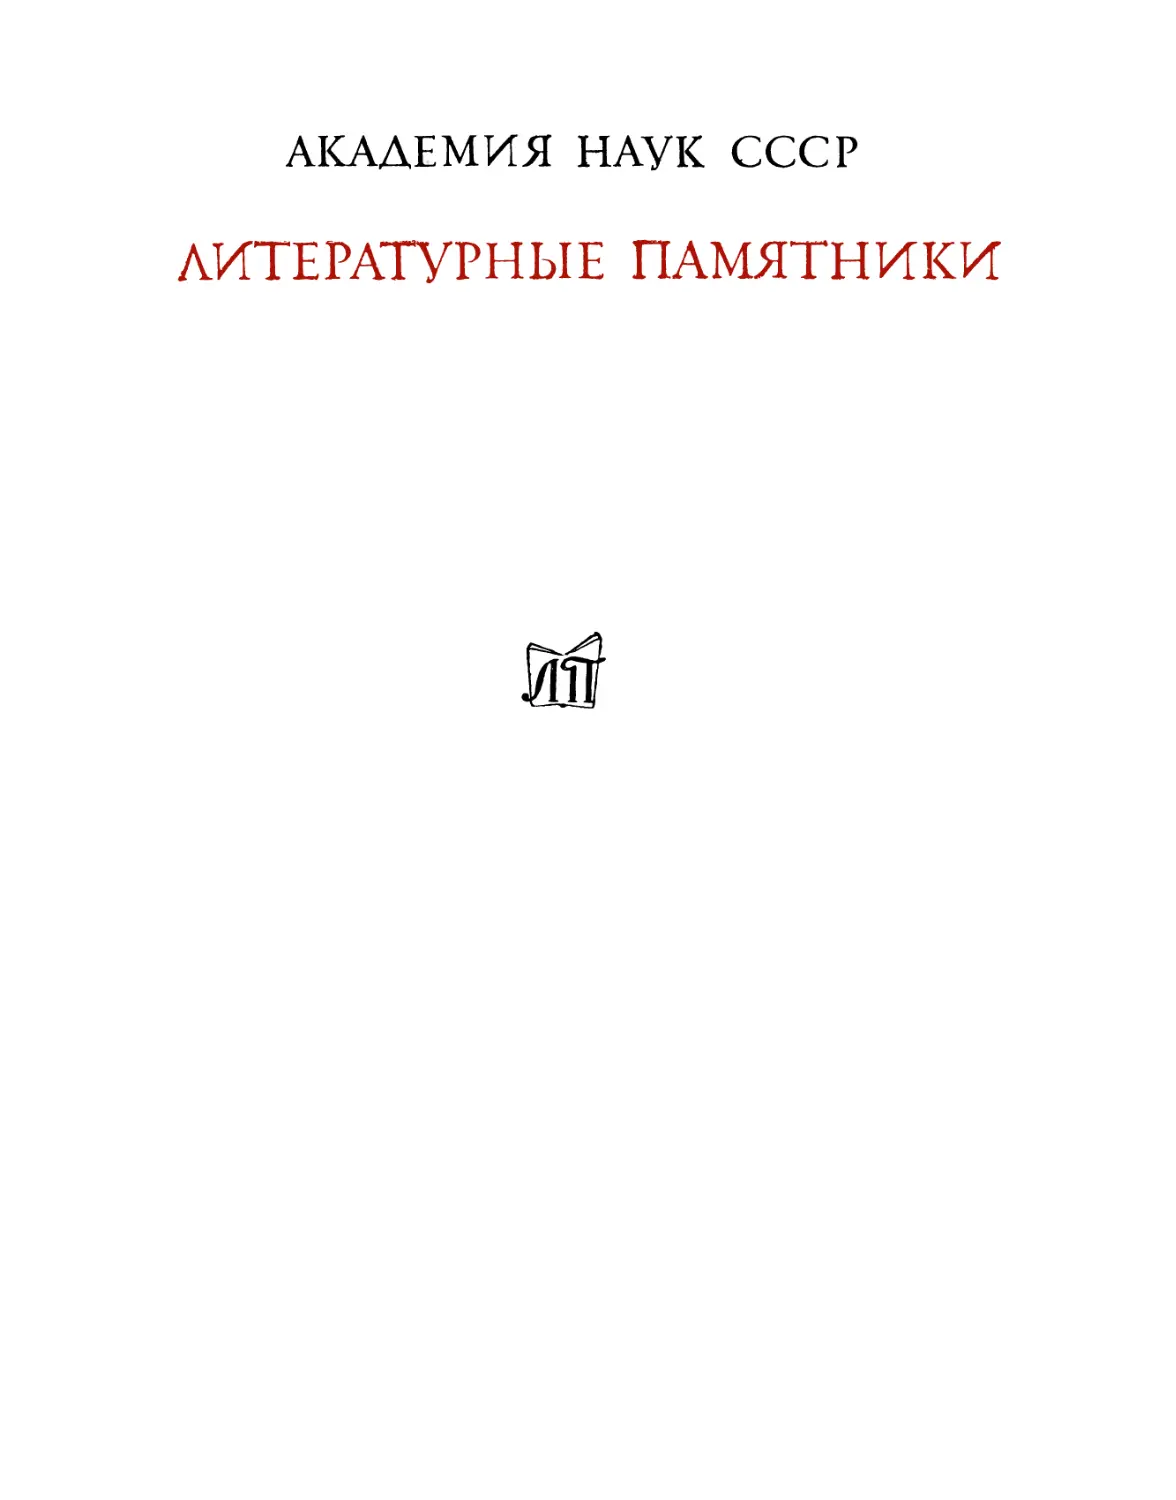 Иннокентий Анненский. Книги отражений – 1979